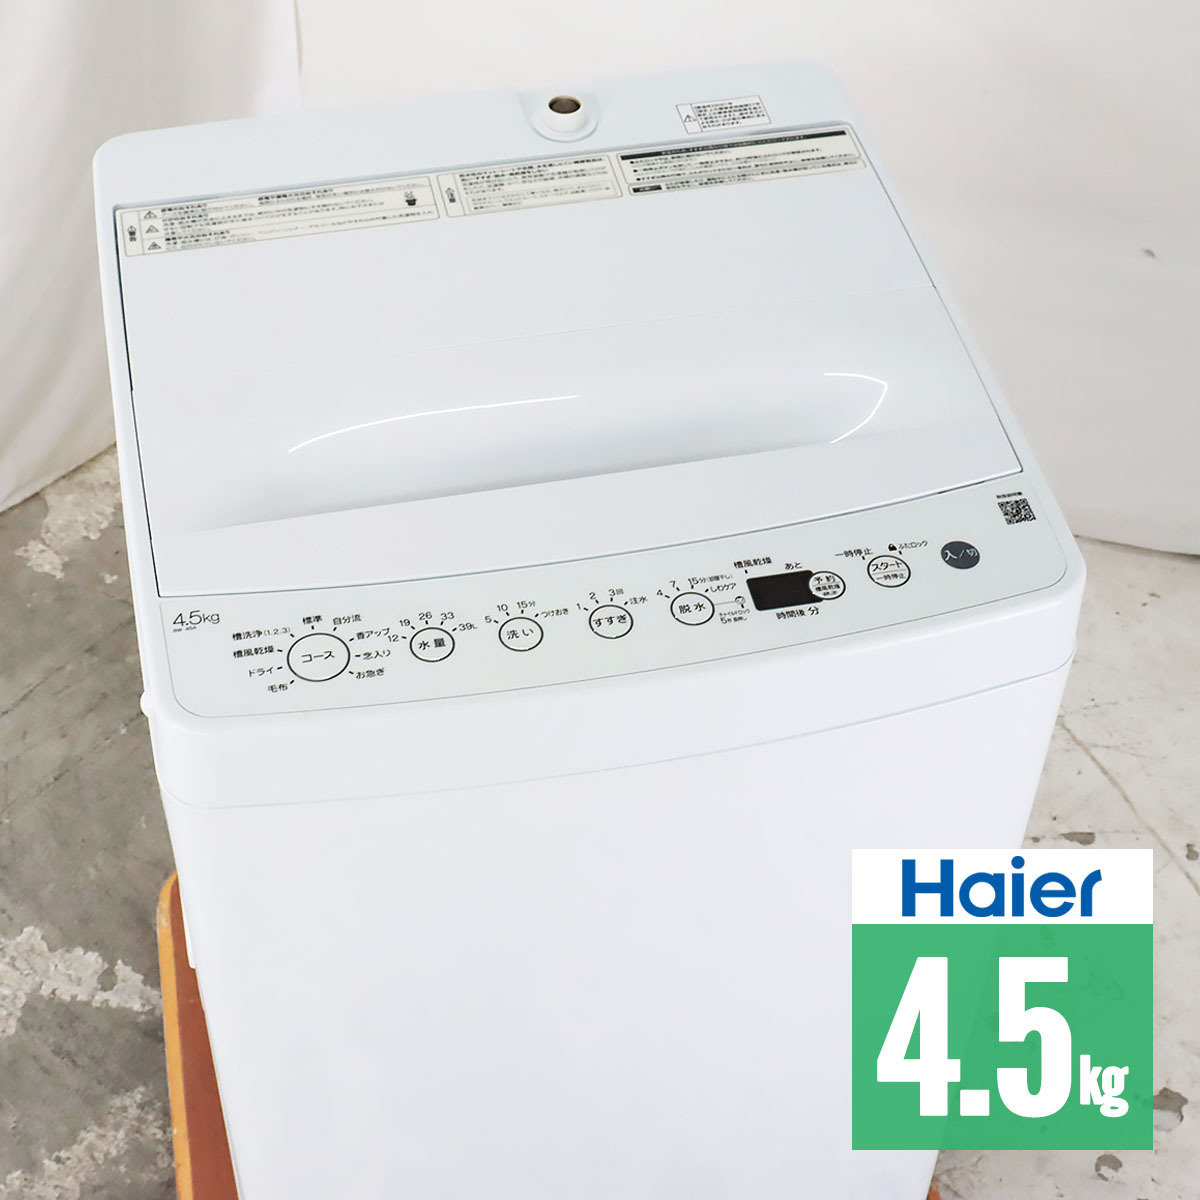 8680円 正規品販売! 全自動洗濯機 ホワイト BW-45A-W